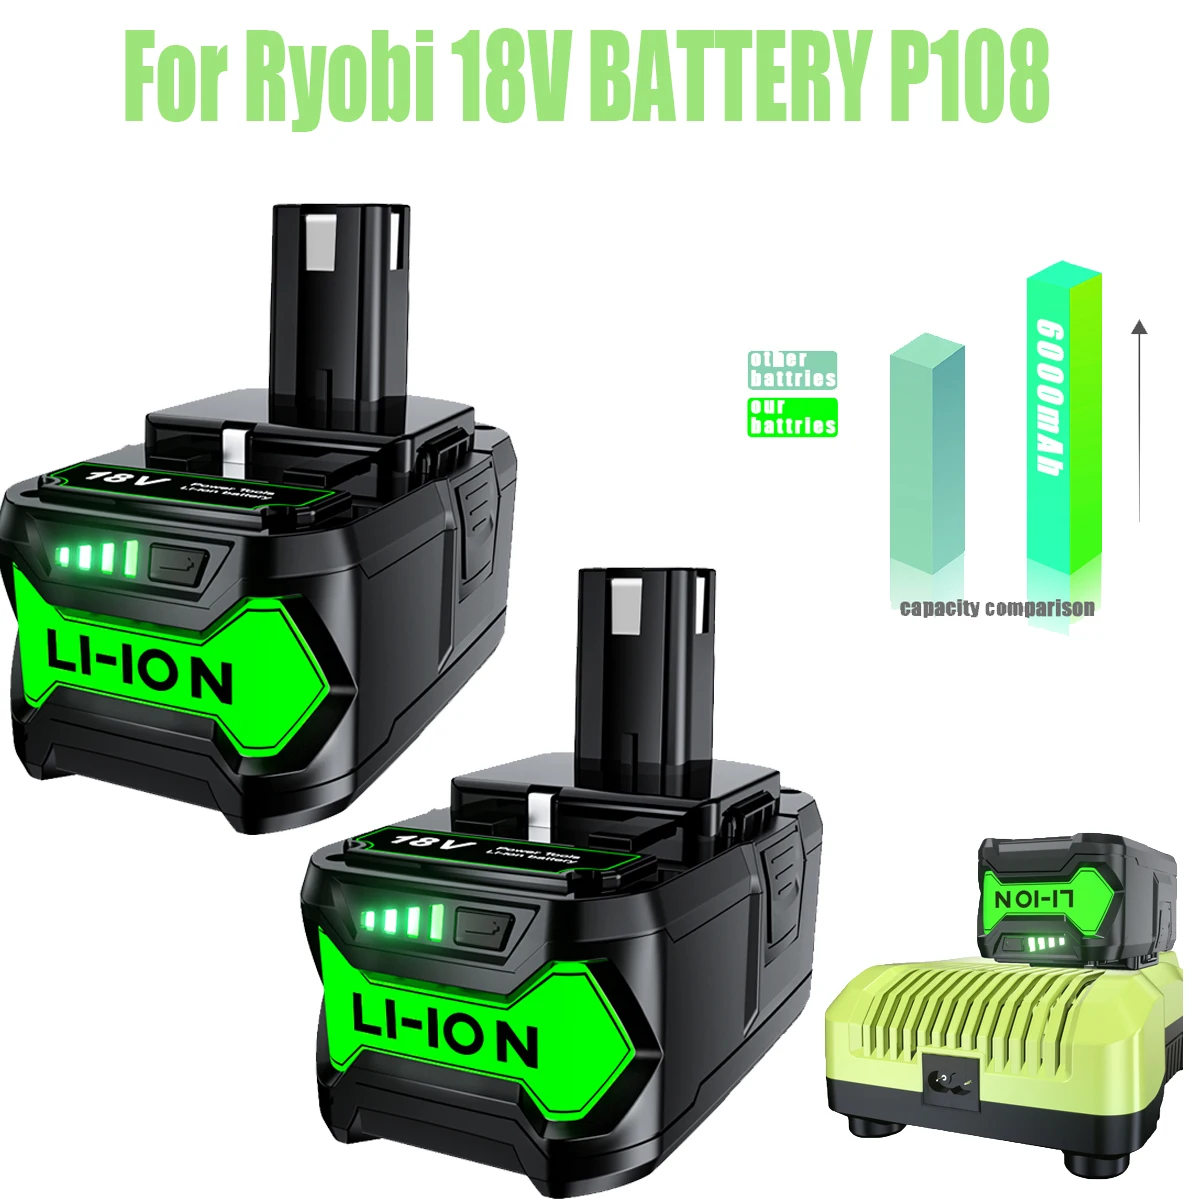 Аккумуляторная батарея 18 в для Ryobi P108, P102, P103, P104, P105, P109, сменная батарея, беспроводная дрель 6000 мА/ч, 18 в, для одного беспроводного инструмента